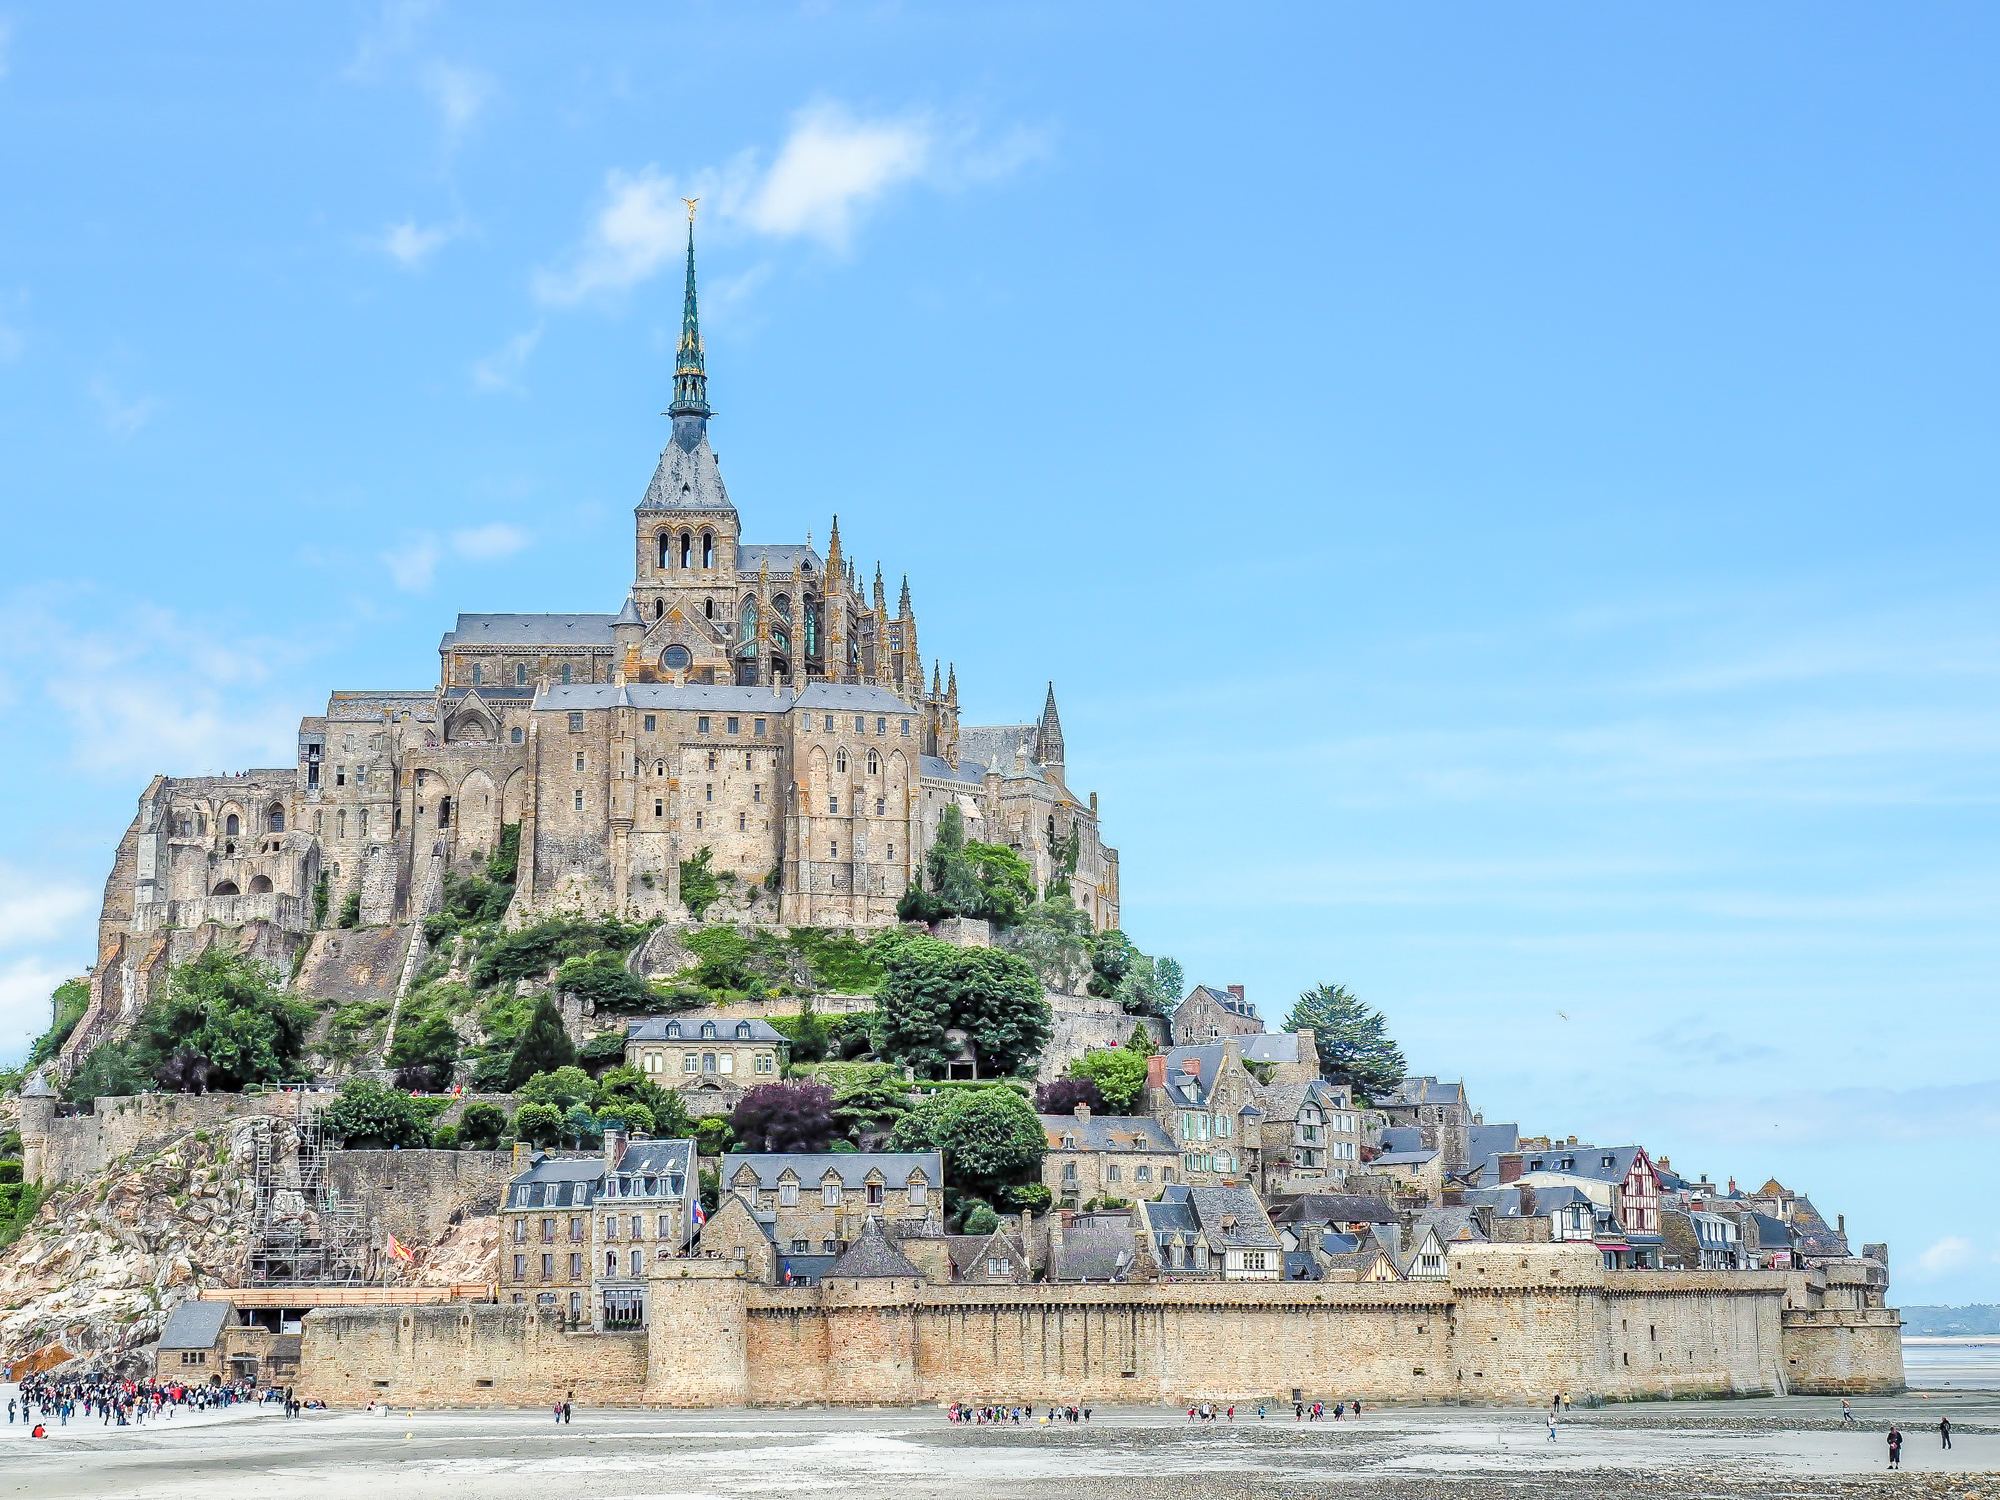 Le Mont Saint Michel - Normandy, France : r/castles